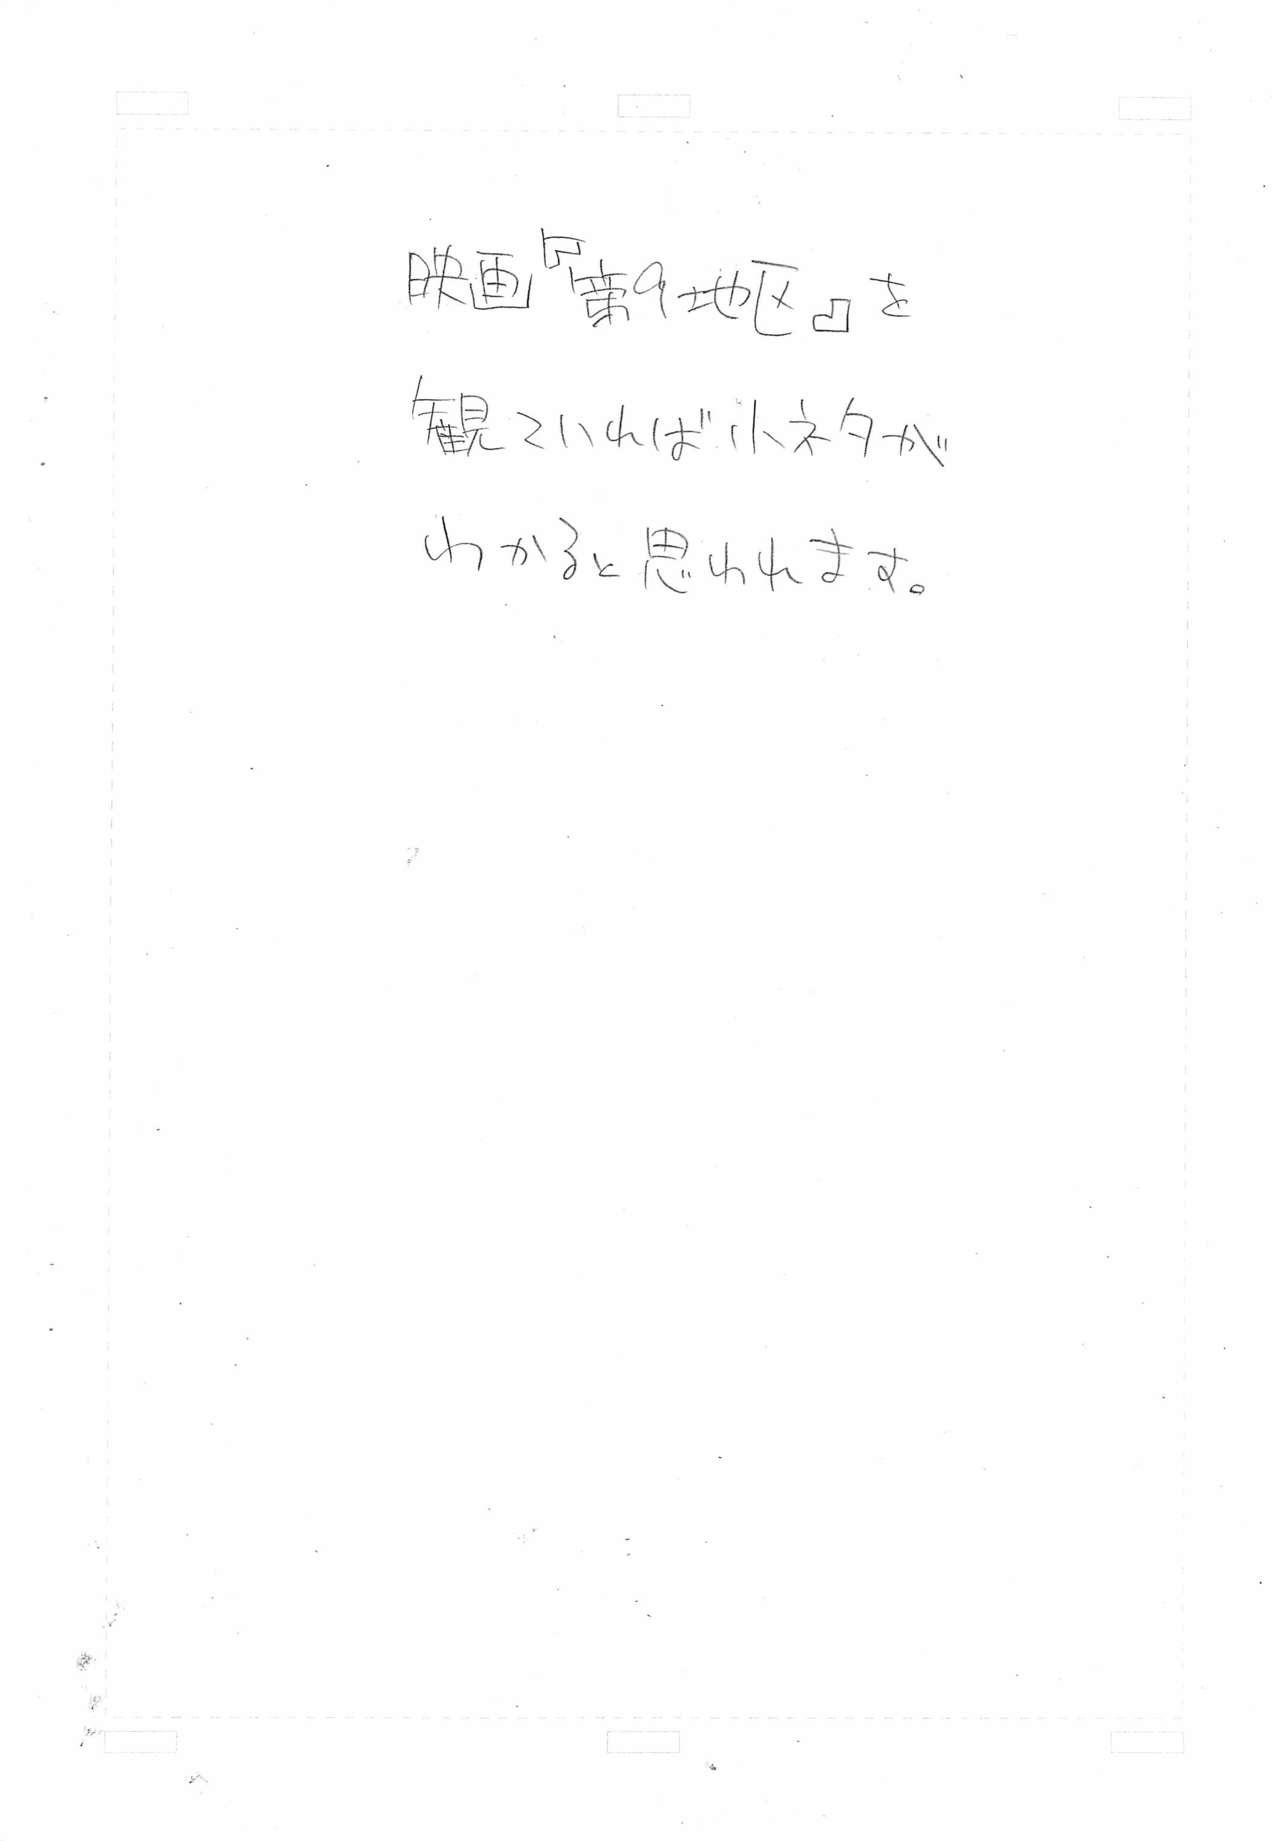 Dick (Puniket 21) [So-matou (So-ma)] Kodomo ja (Ryaku) 8 Kurai? (Fushigiboshi no Futago Hime) - Fushigiboshi no futagohime | twin princesses of the wonder planet Deep Throat - Page 2